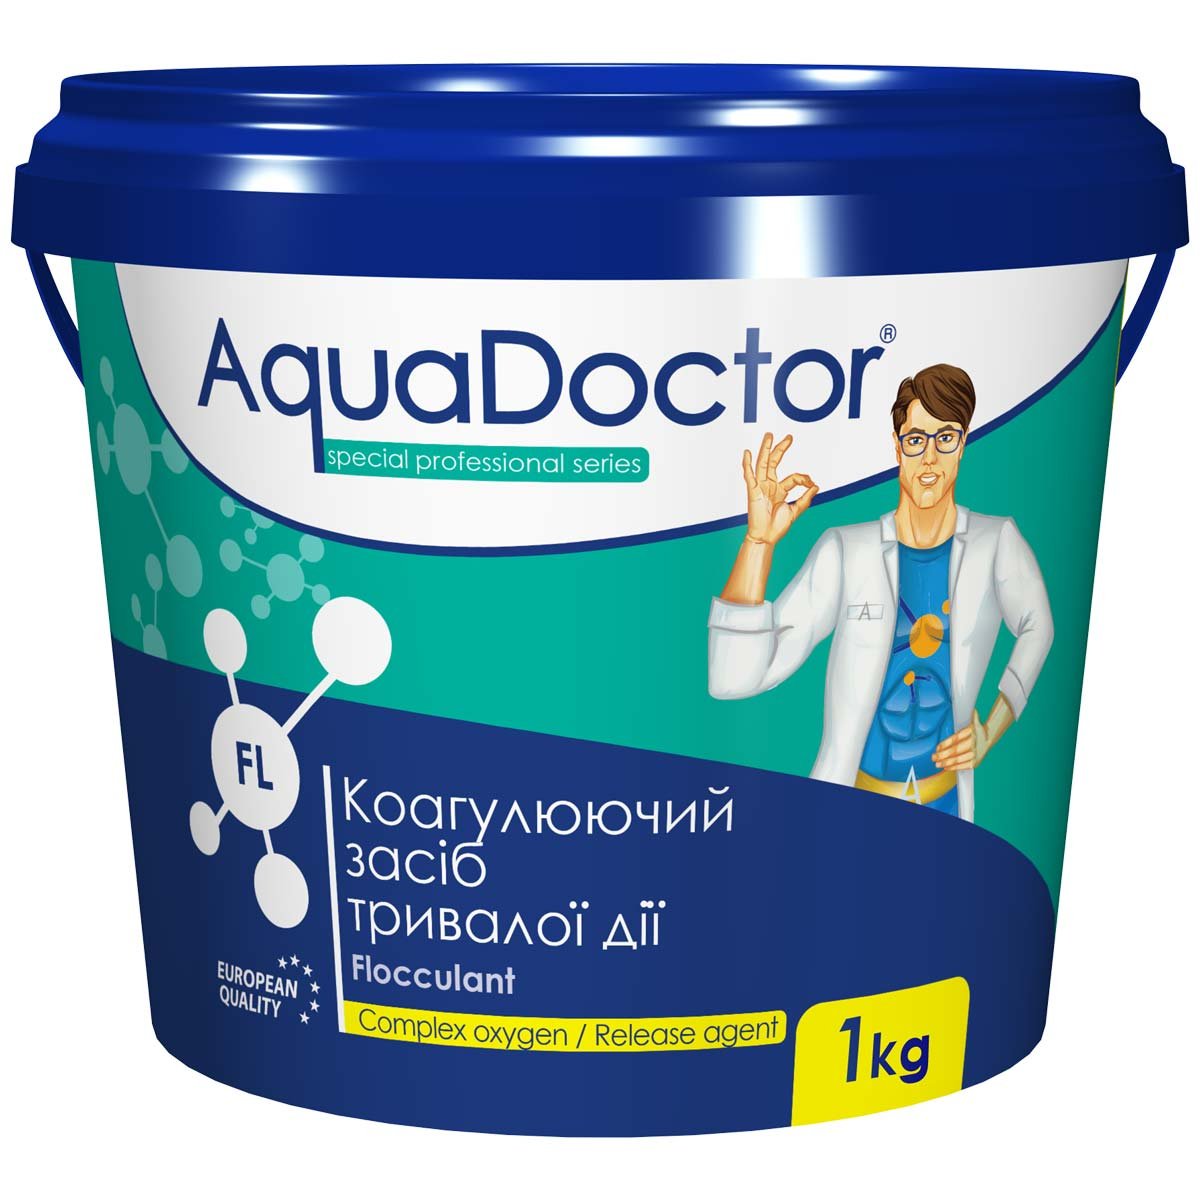 Коагулюючий засіб в гранулах AquaDoctor FL – 1 кг